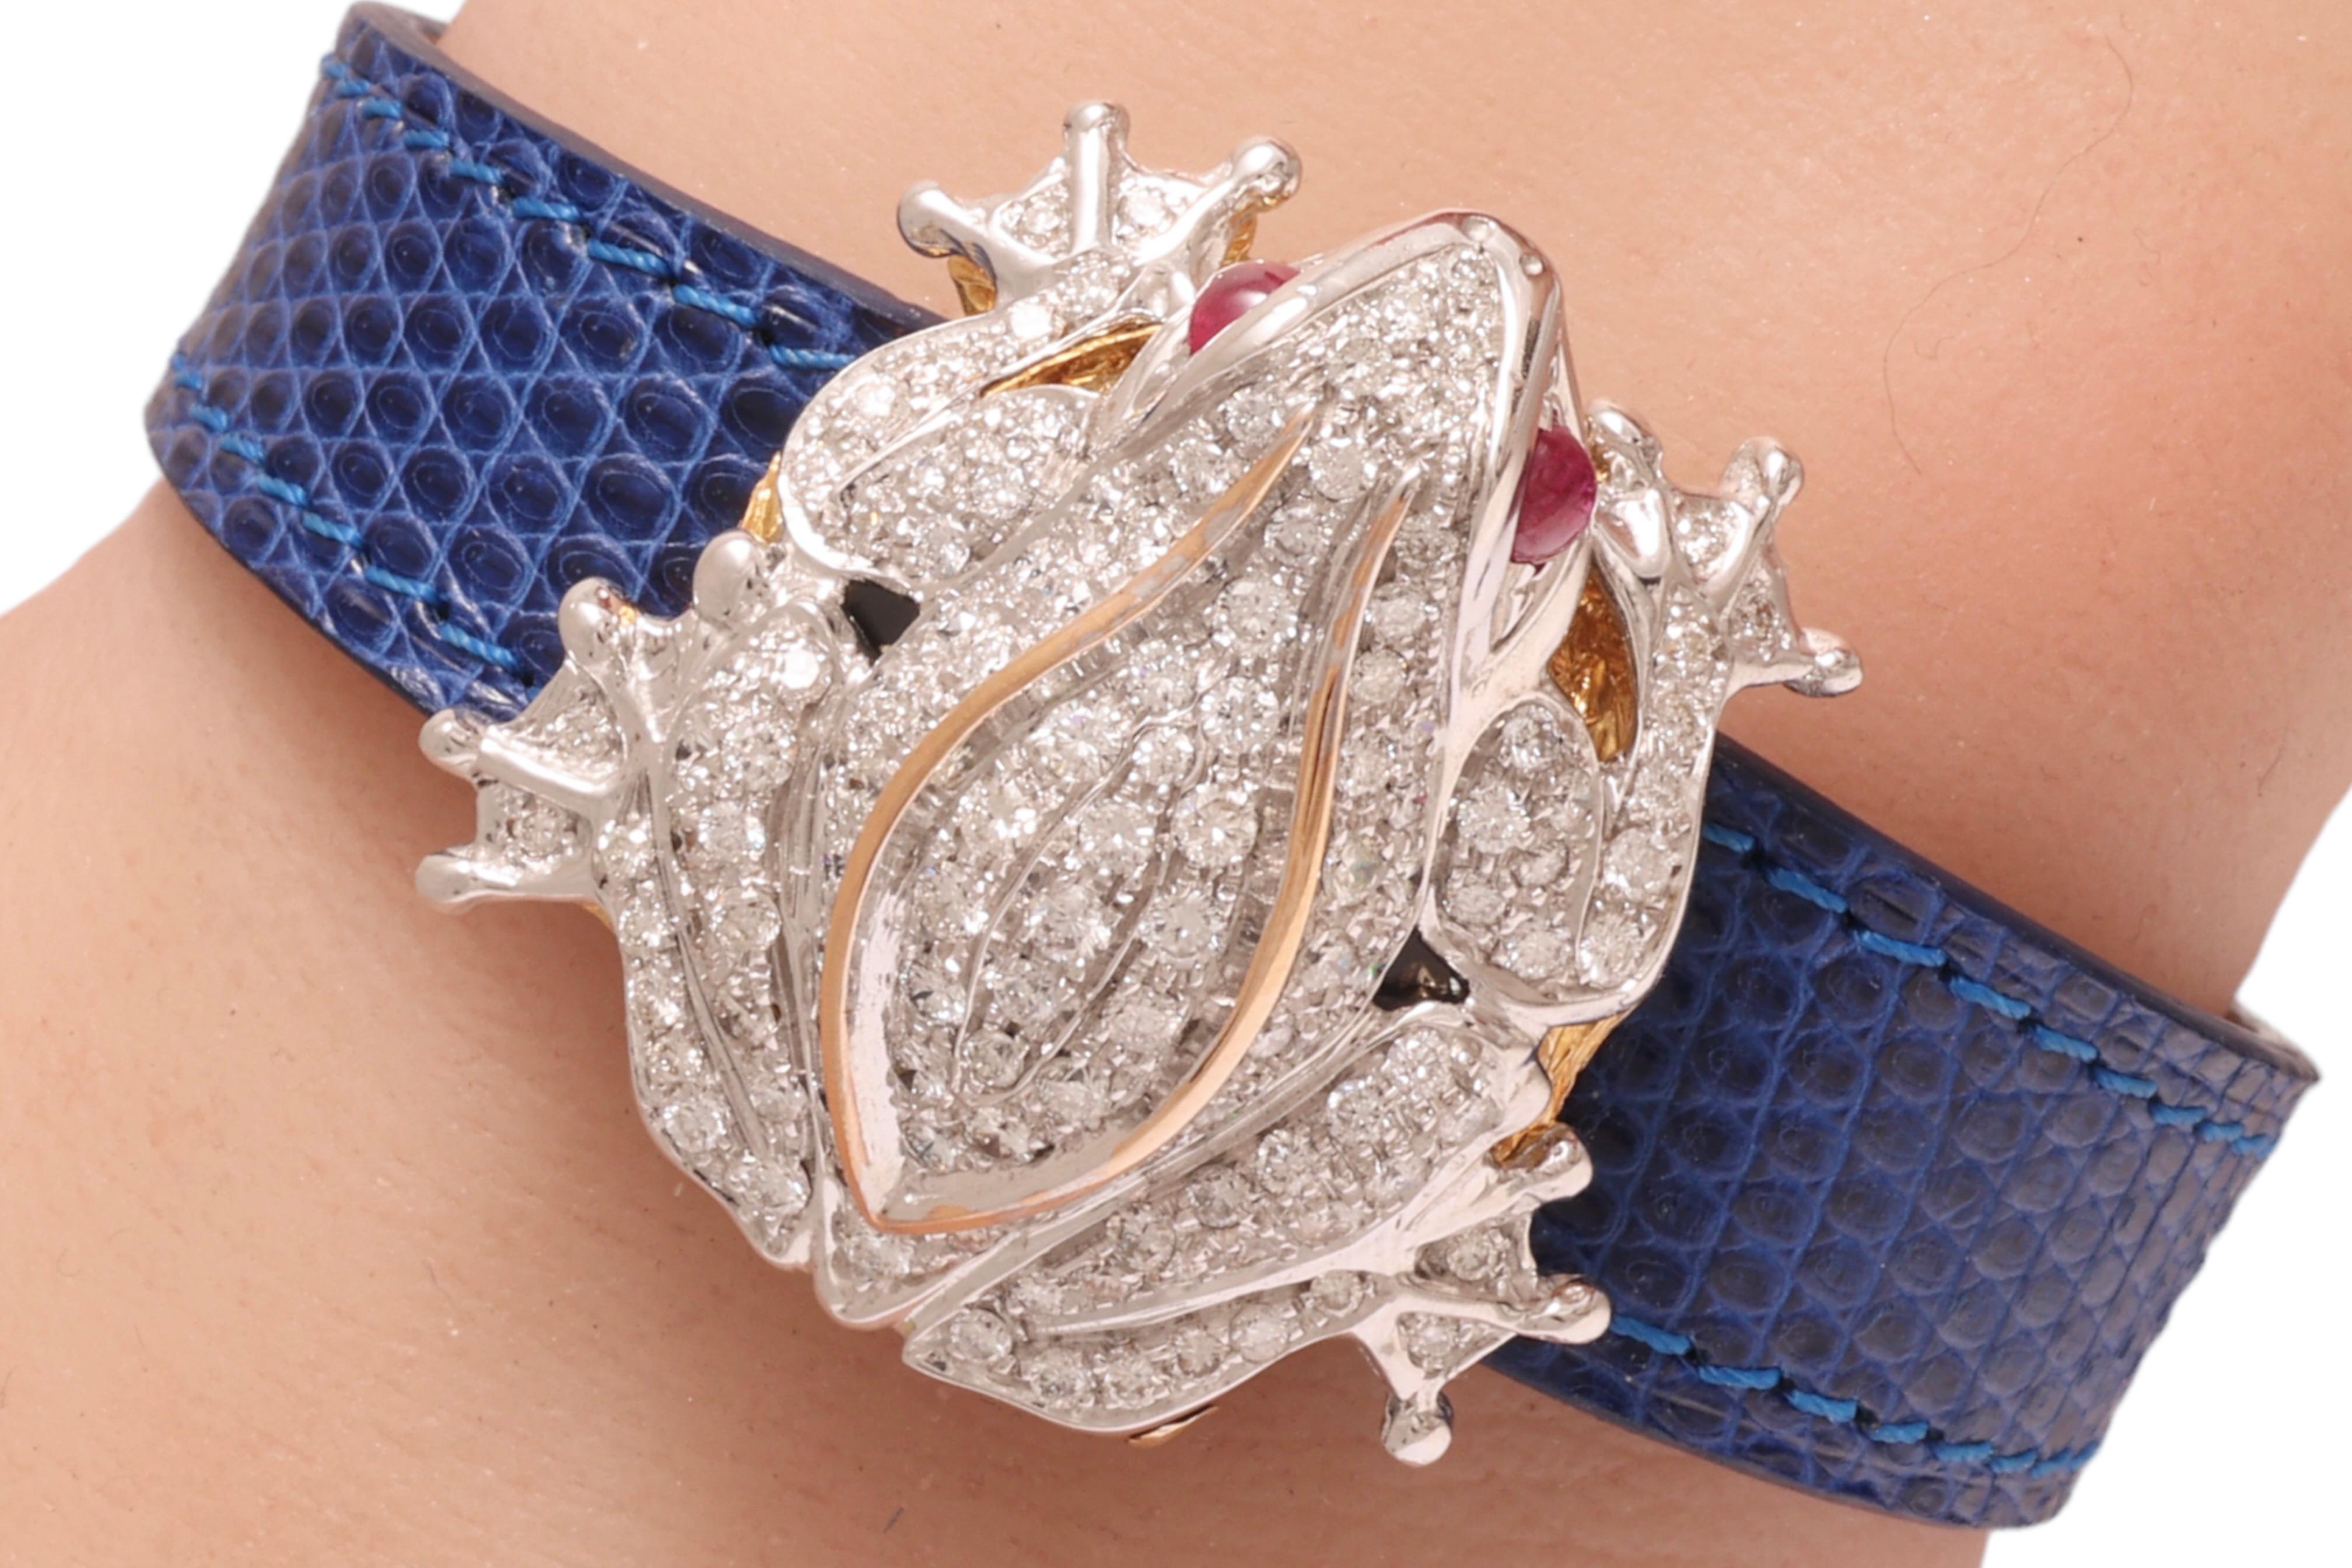 Zannetti Rana Scrigno Jewel Frog Wrist Watch / Bracelet, Diamonds & Ruby's For Sale 4